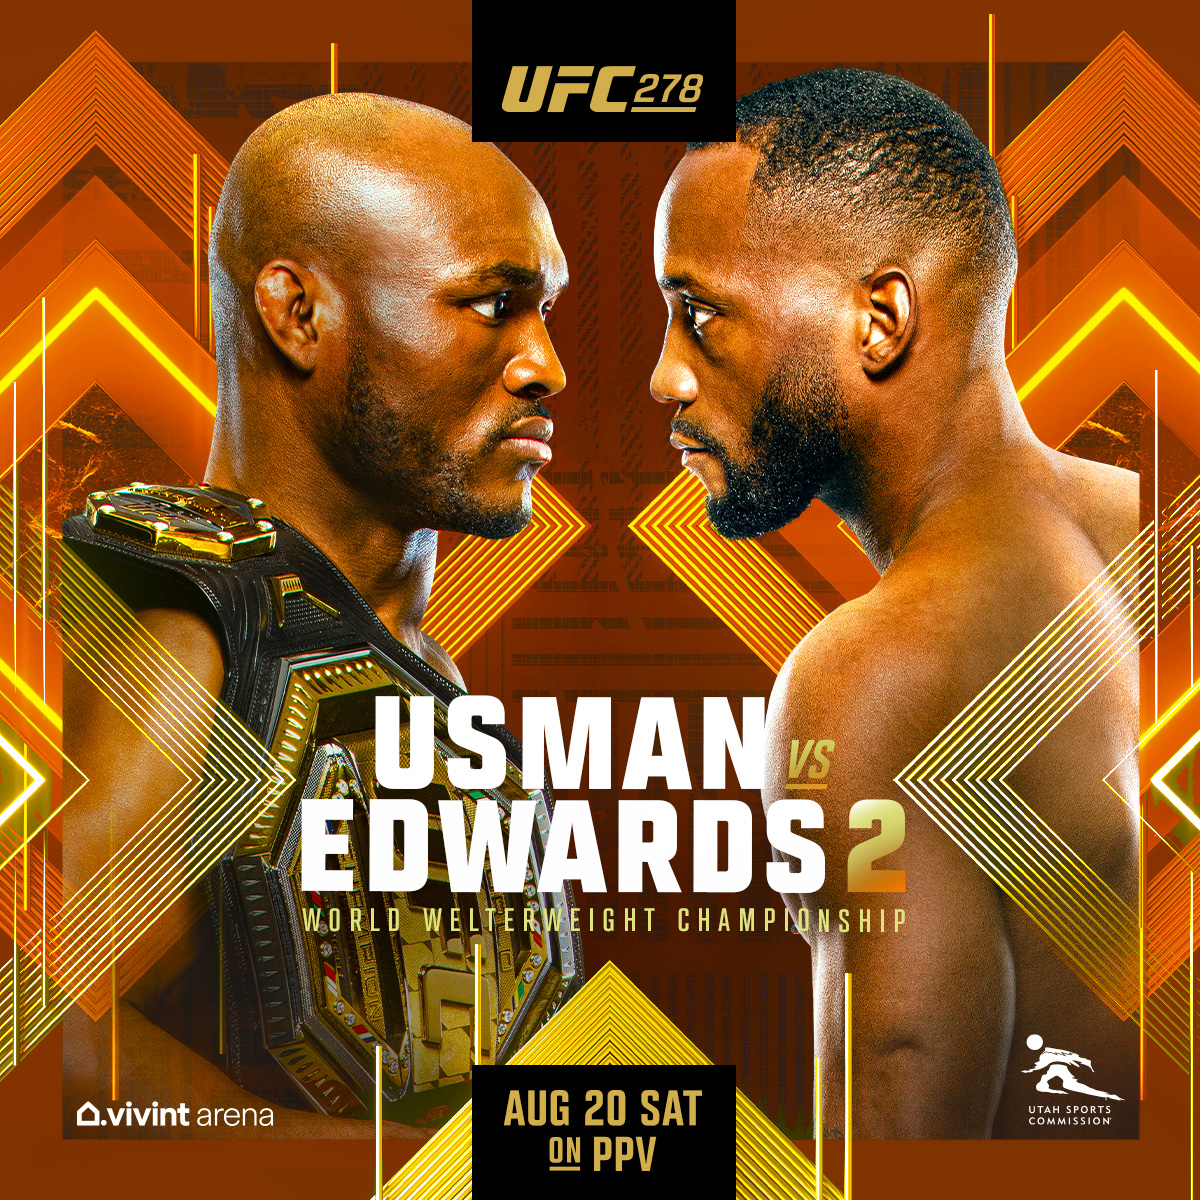 Usman vs Edwards 2